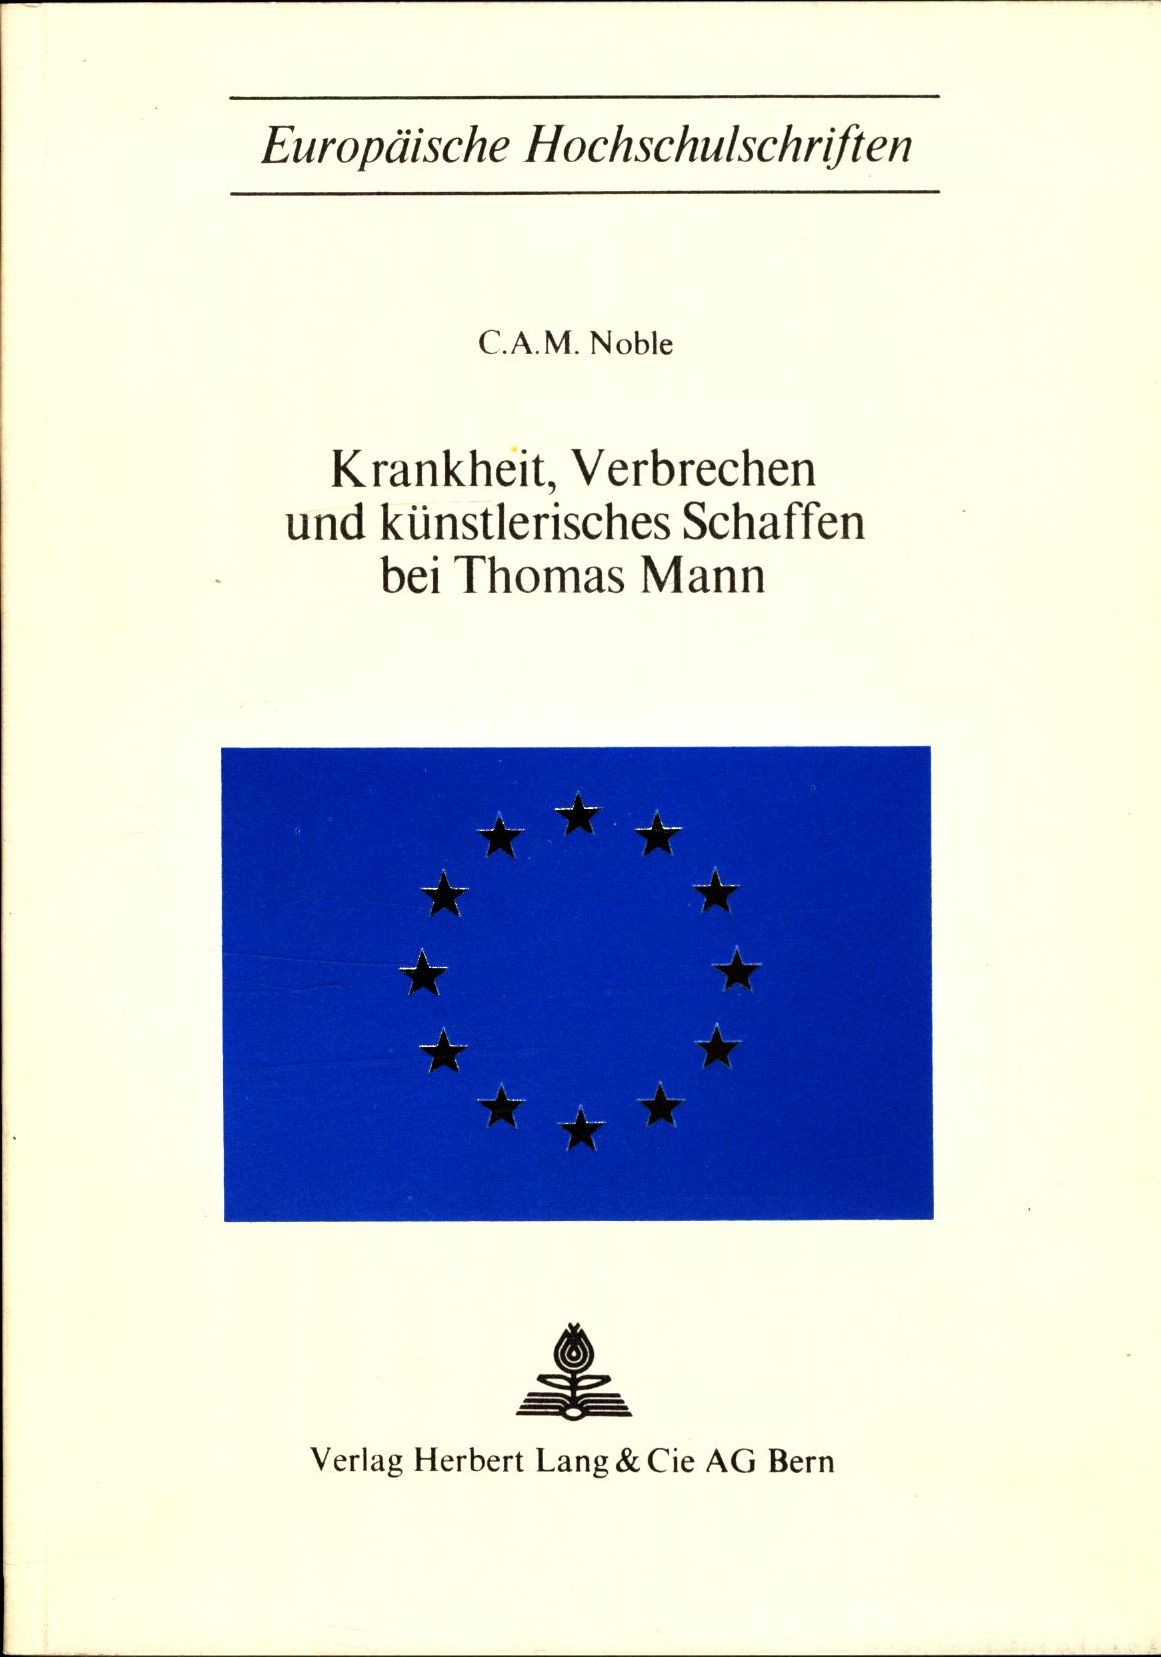 Krankheit, Verbrechen und künstlerisches Schaffen bei Thomas Mann  Neuausgabe, Europäische Hochschulschriften - Noble, C.A.M.